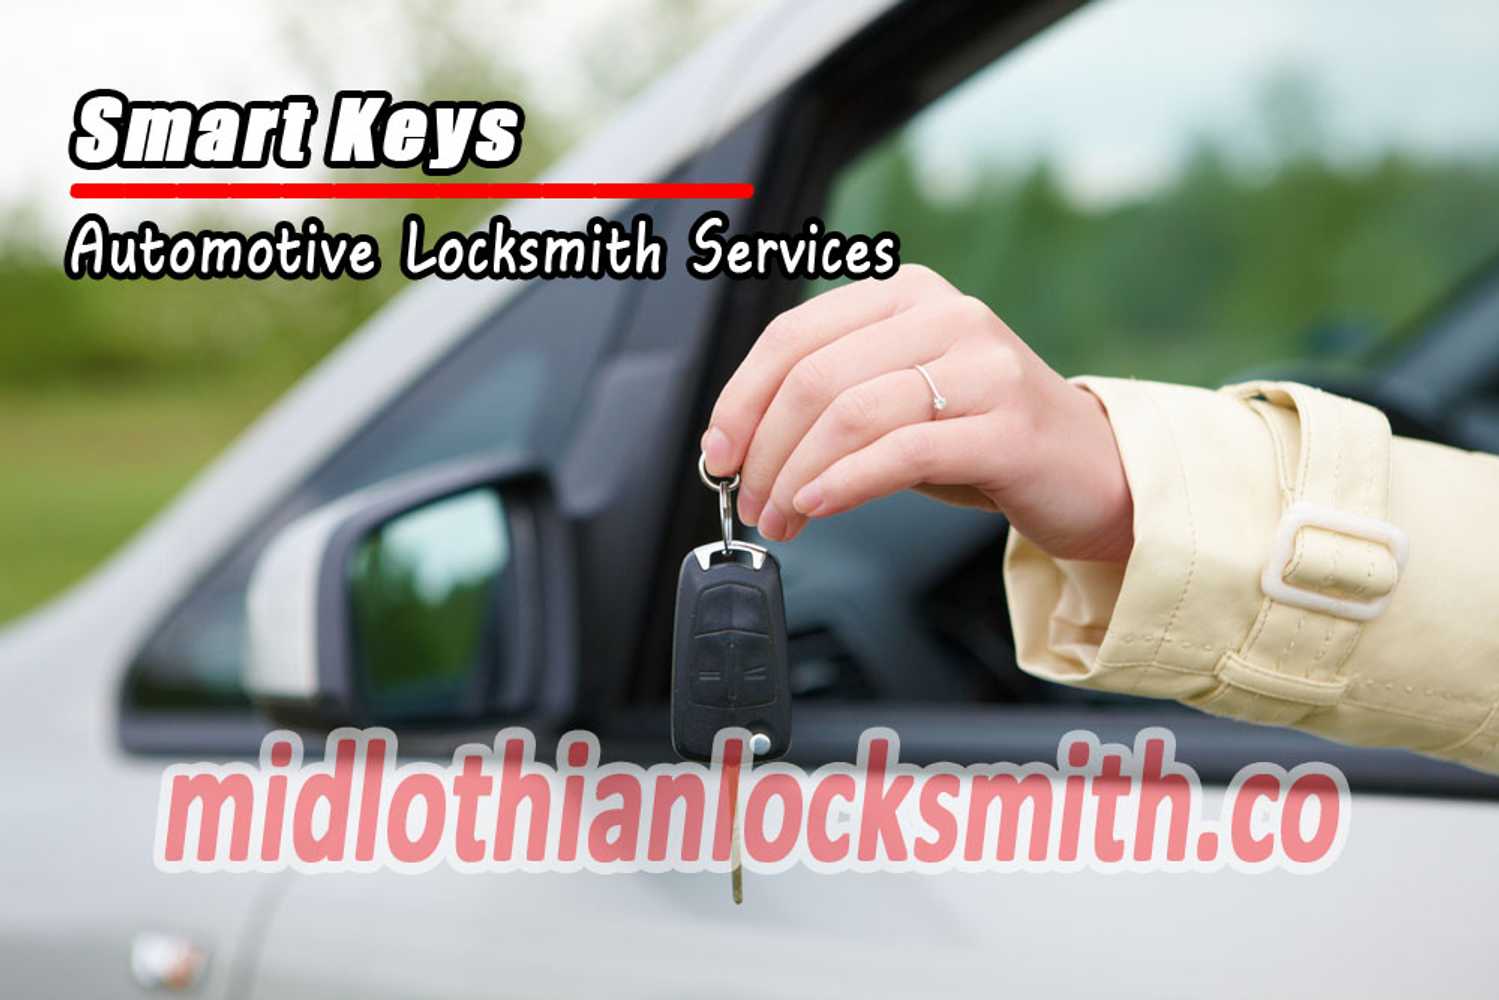 Midlothian Locksmiths Co.